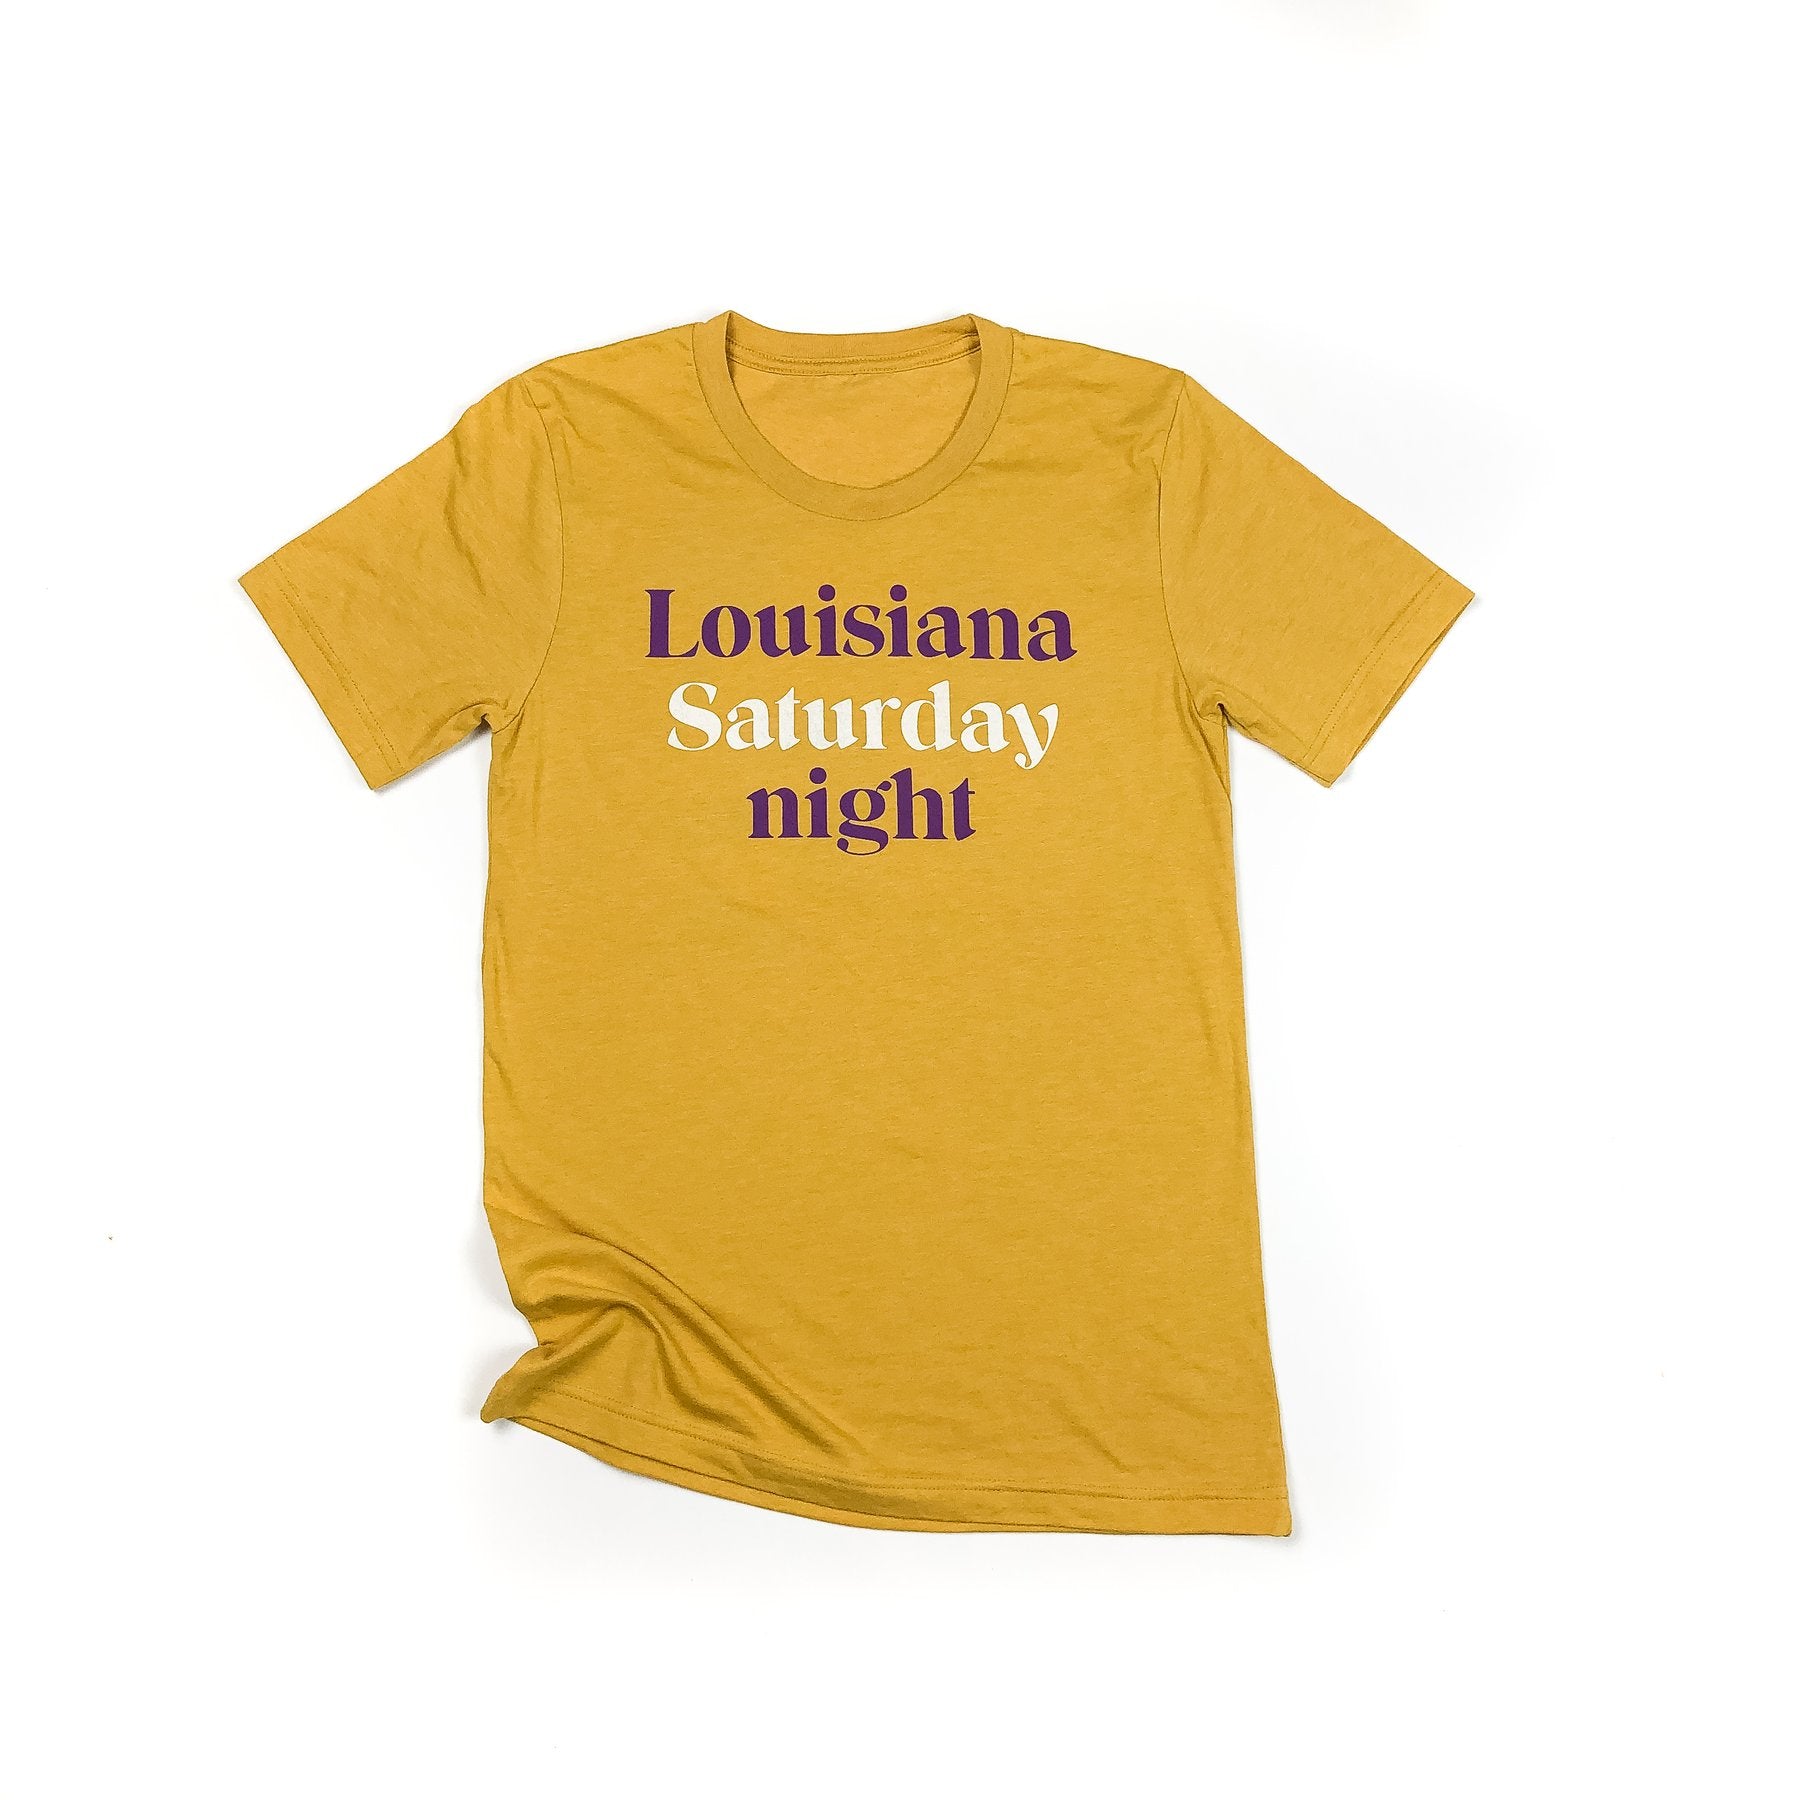 Louisiana Purchase, 1803 Women's T-Shirt